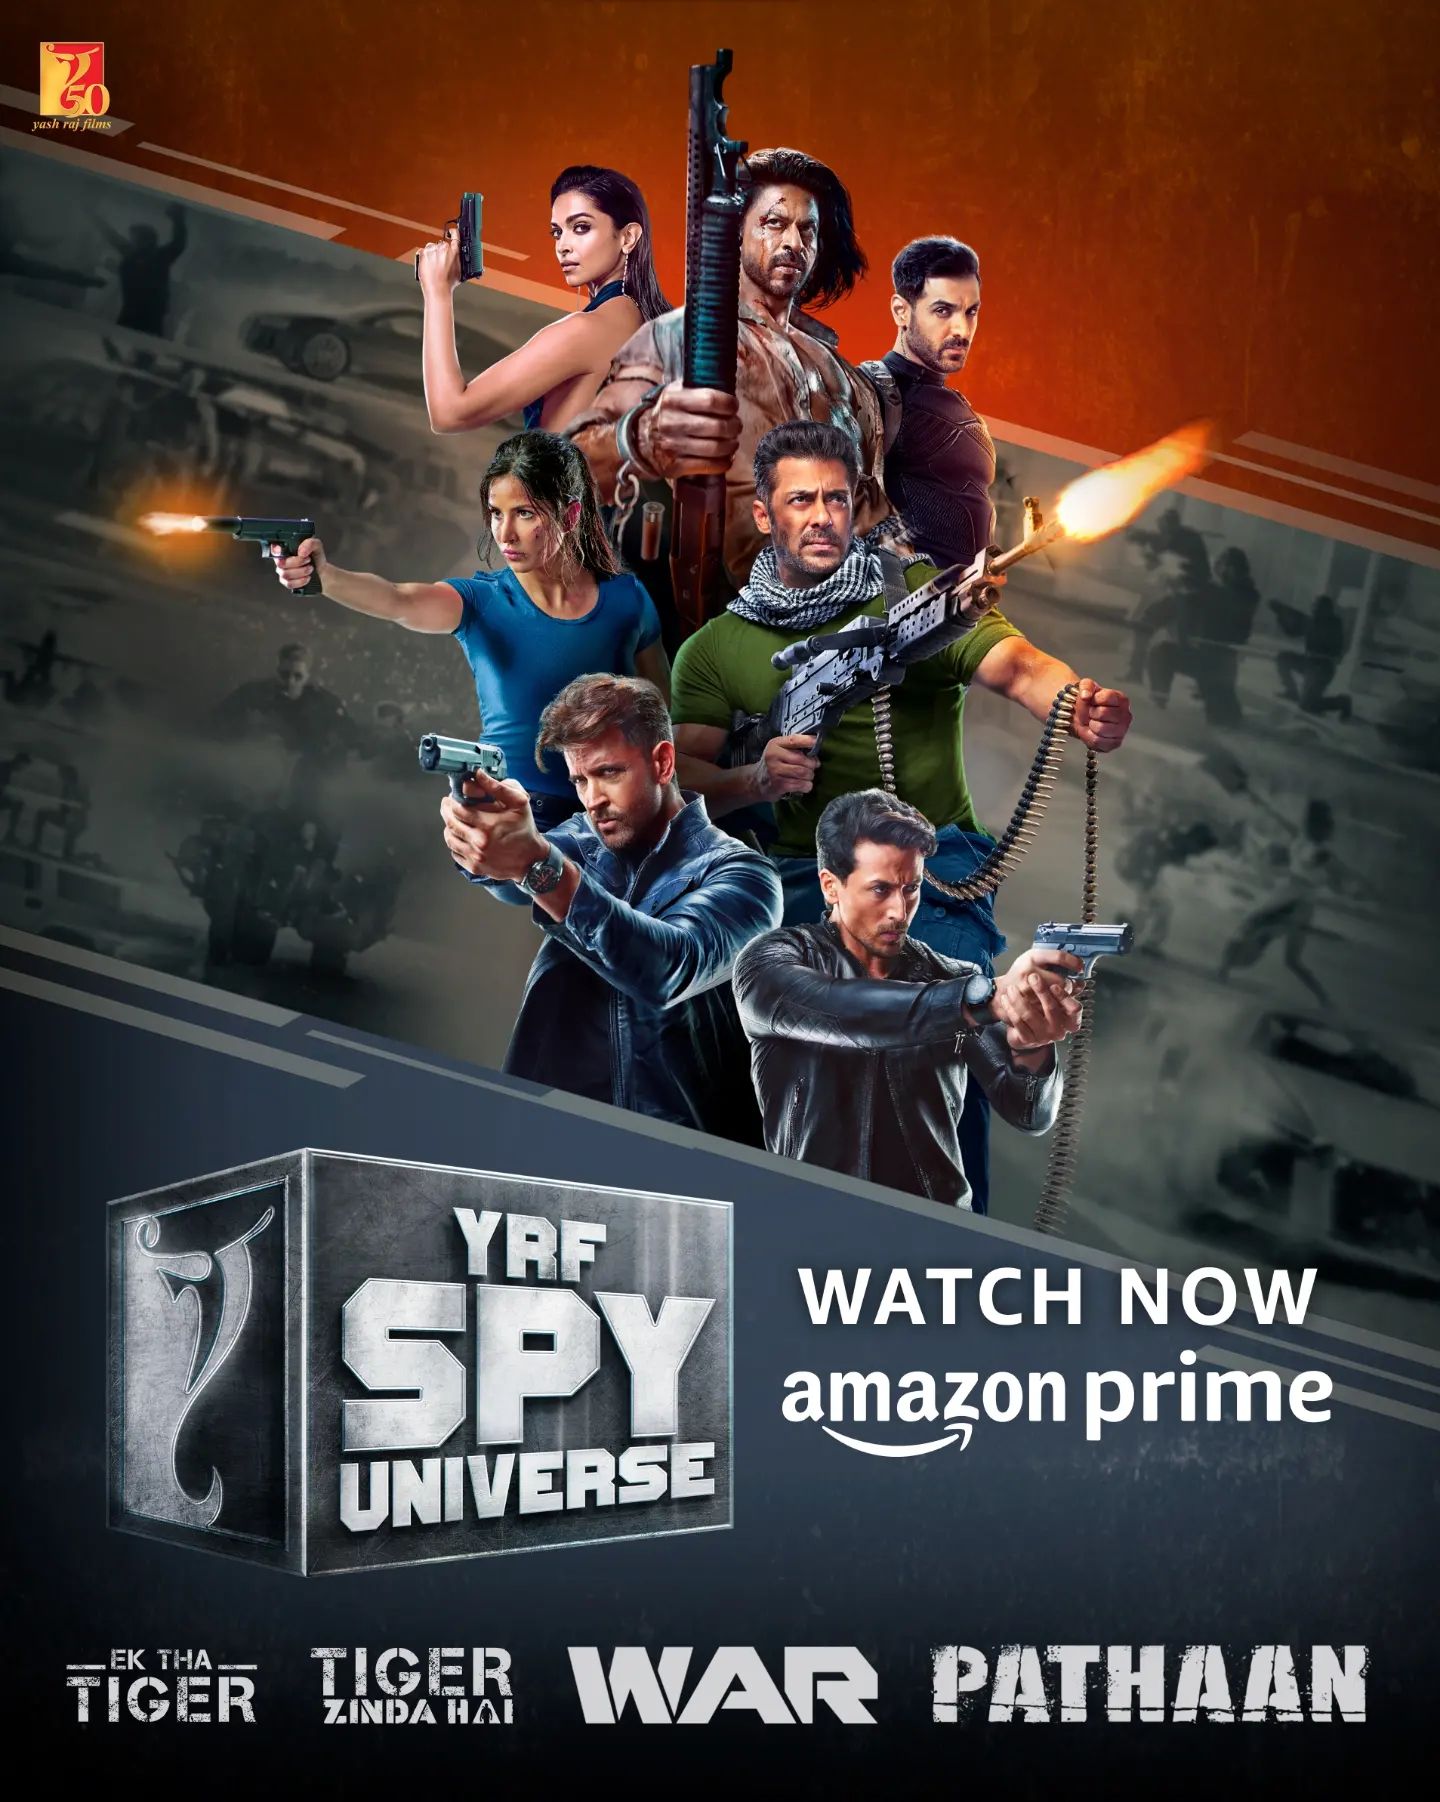 YRF spy universe movies